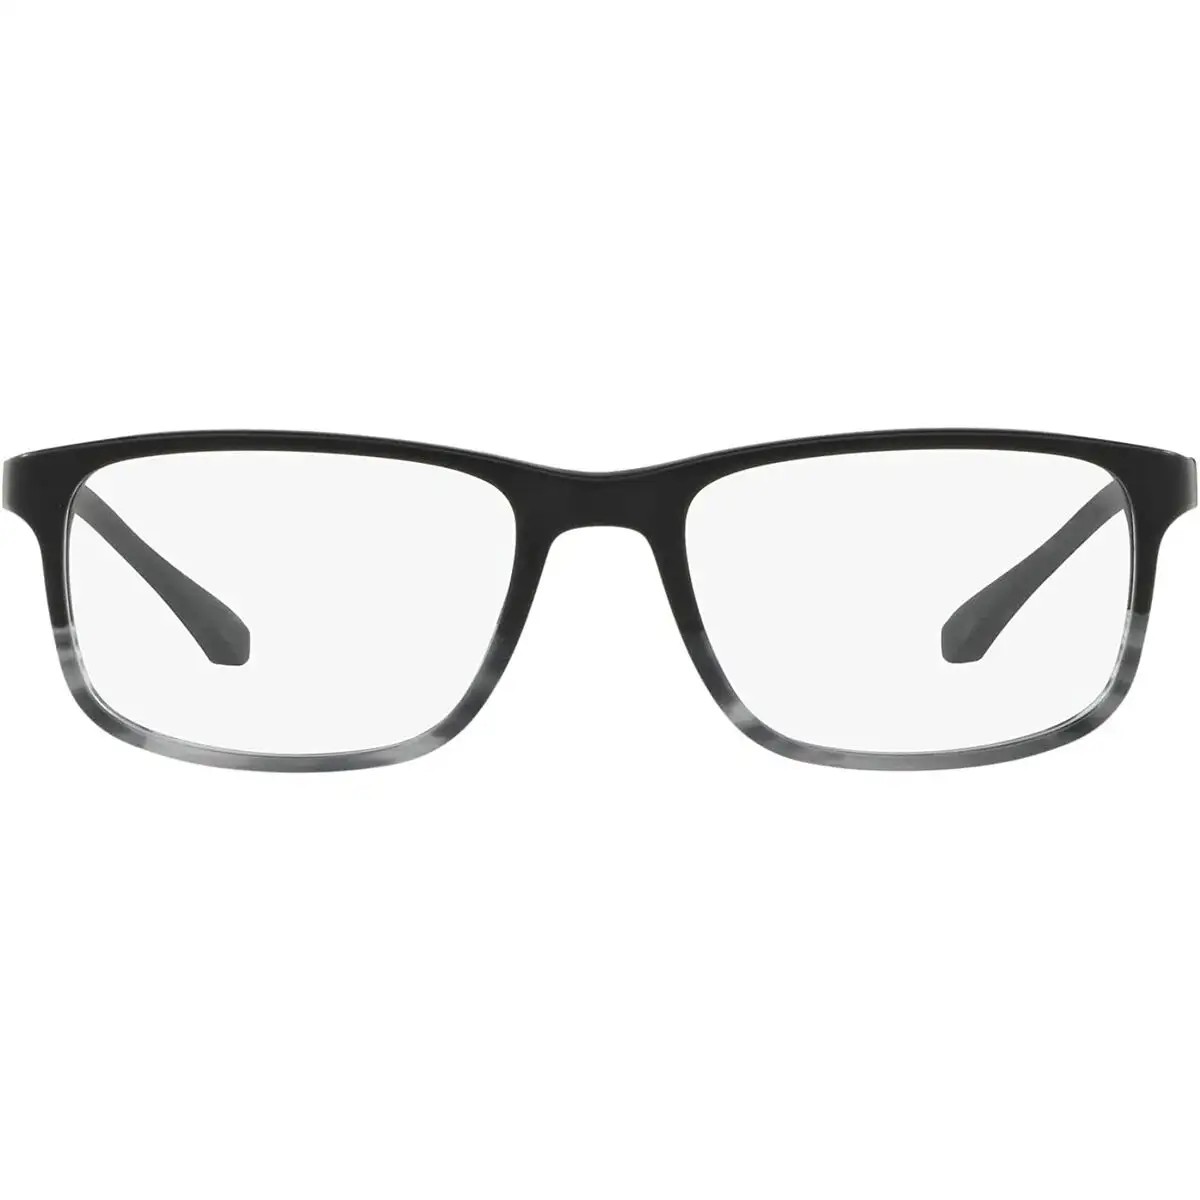 Monture de lunettes homme emporio armani ea 3098_2012. DIAYTAR SENEGAL - Votre Source de Découvertes Shopping. Naviguez à travers nos catégories et découvrez des articles qui vous surprendront et vous séduiront.